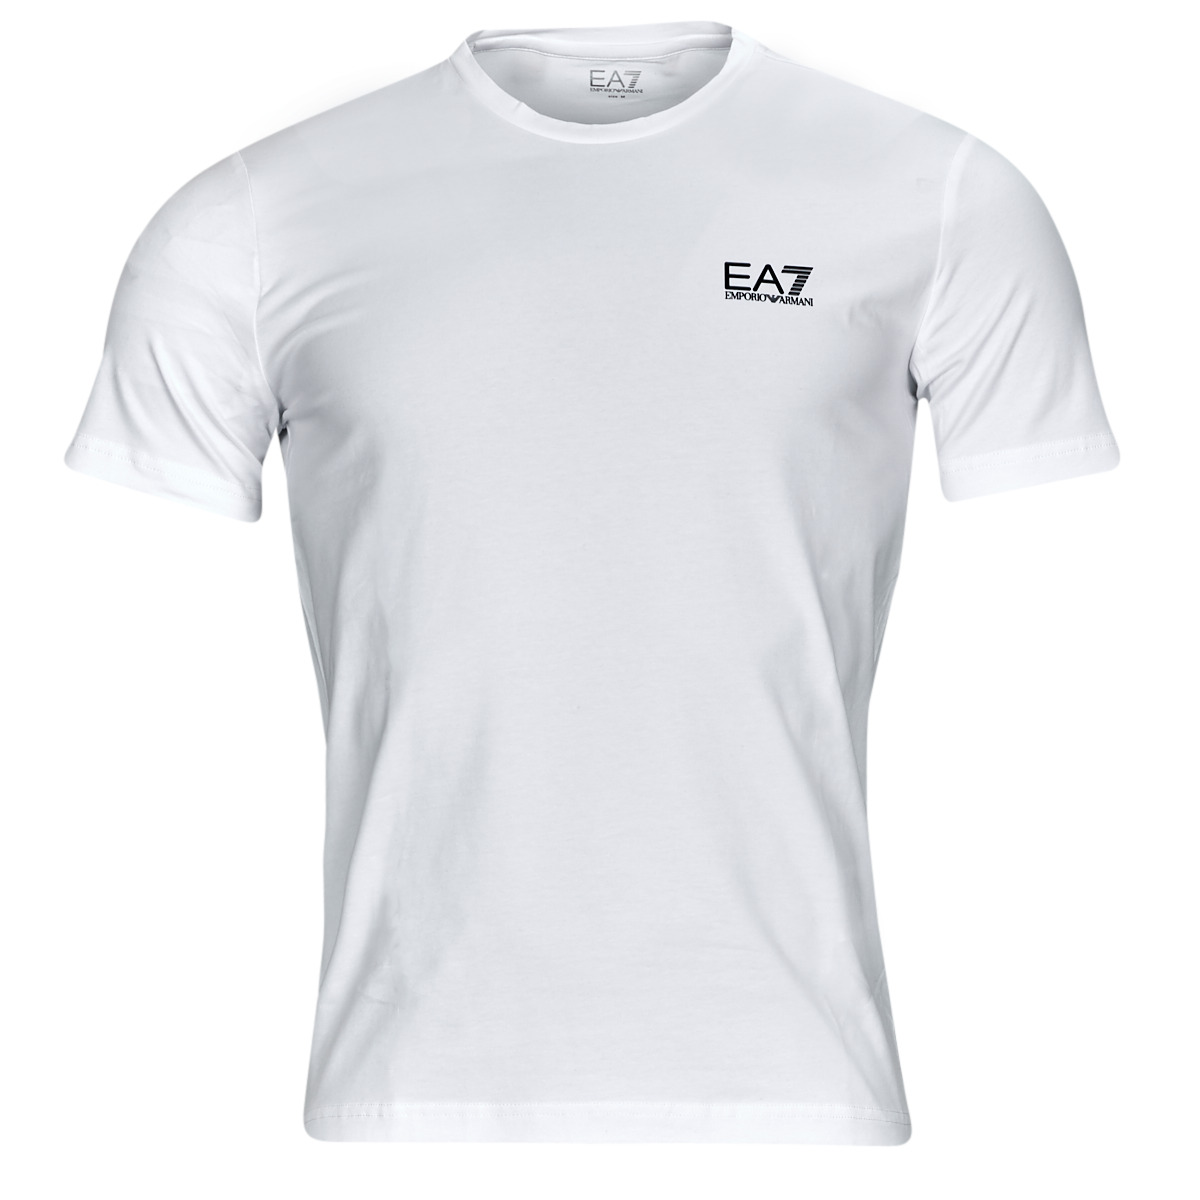 Υφασμάτινα Άνδρας T-shirt με κοντά μανίκια Emporio Armani EA7 CORE IDENTITY TSHIRT Άσπρο